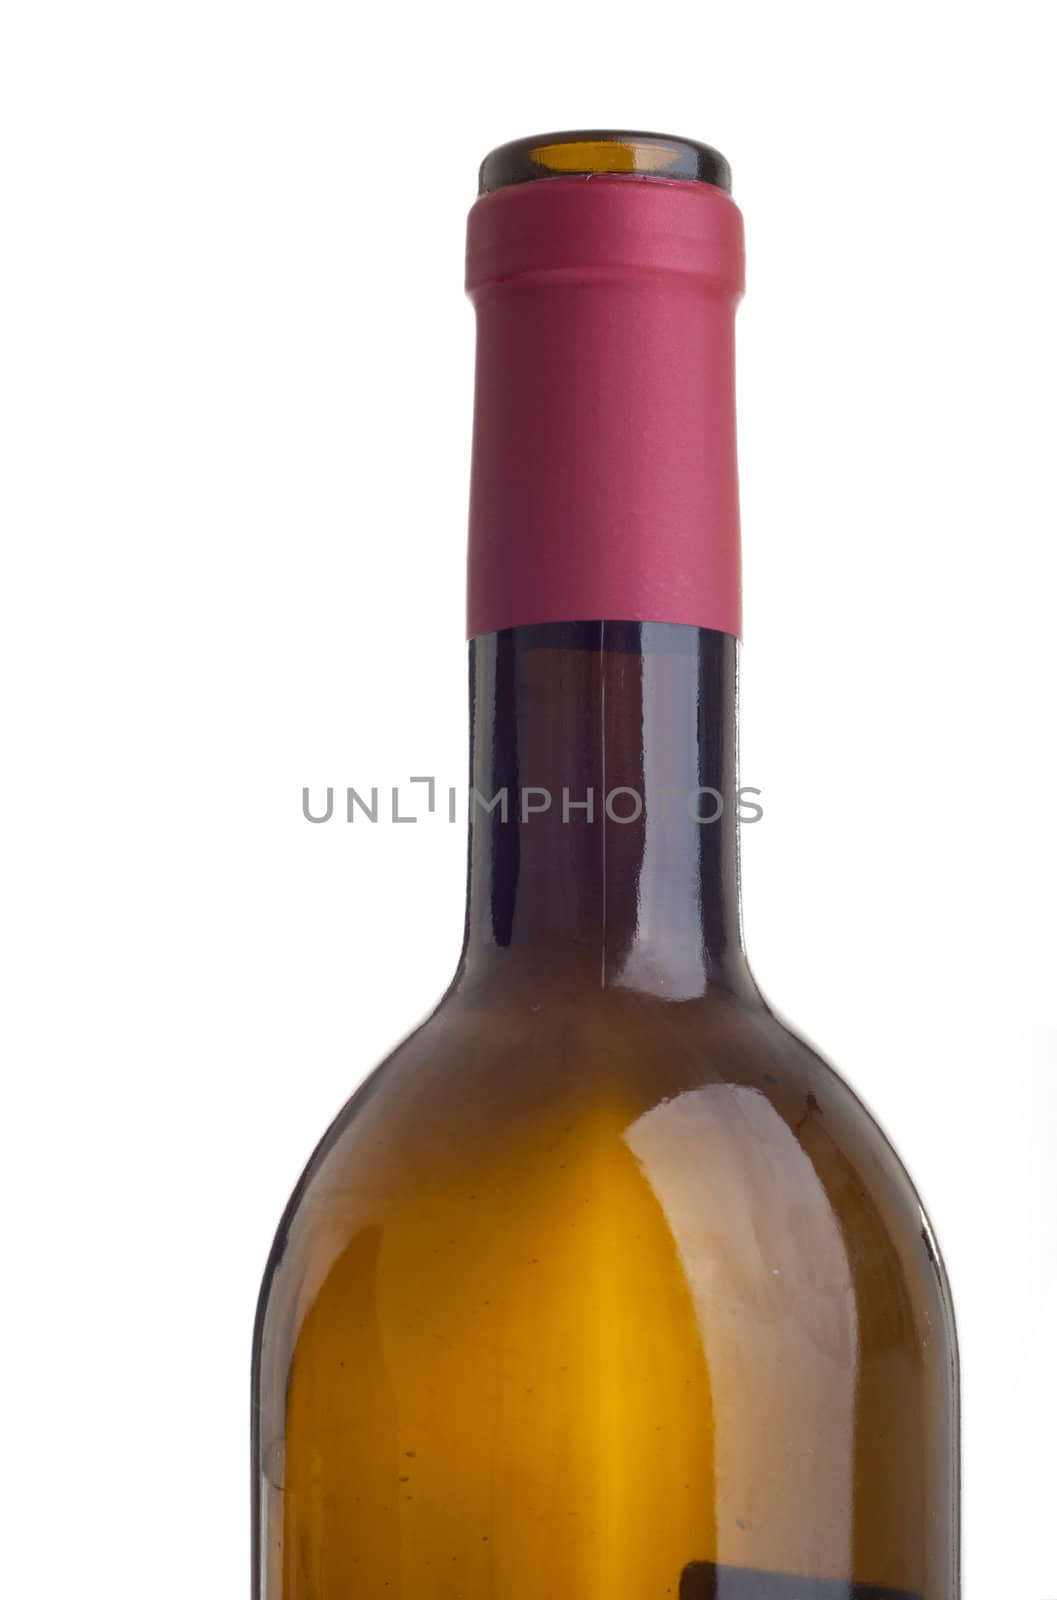 Wine bottle by luissantos84